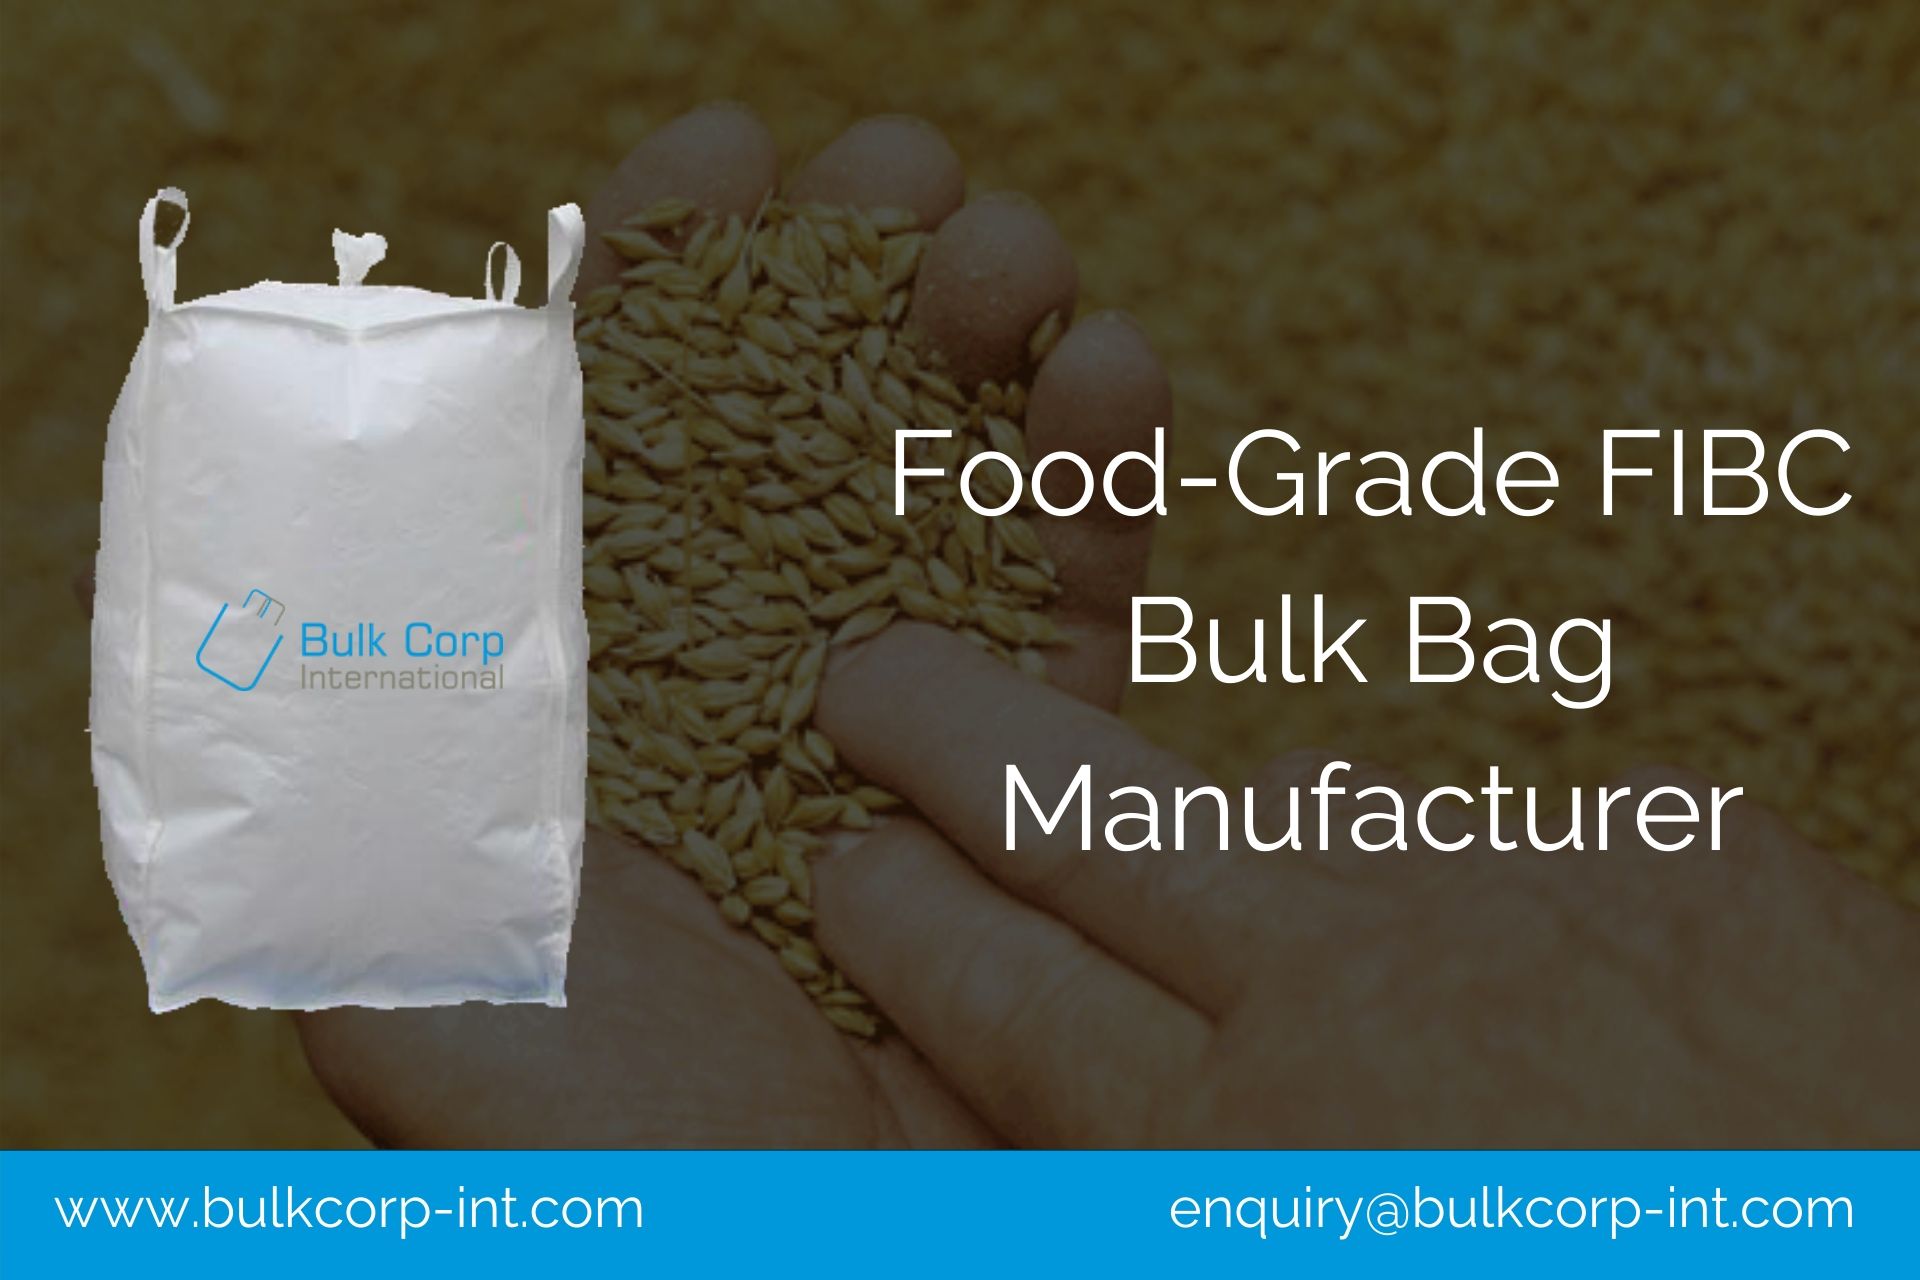 https://www.bulkcorp-int.com/blog/wp-content/uploads/2019/11/Food-Grade-FIBC-Bulk-Bag-Manufacturer.jpg